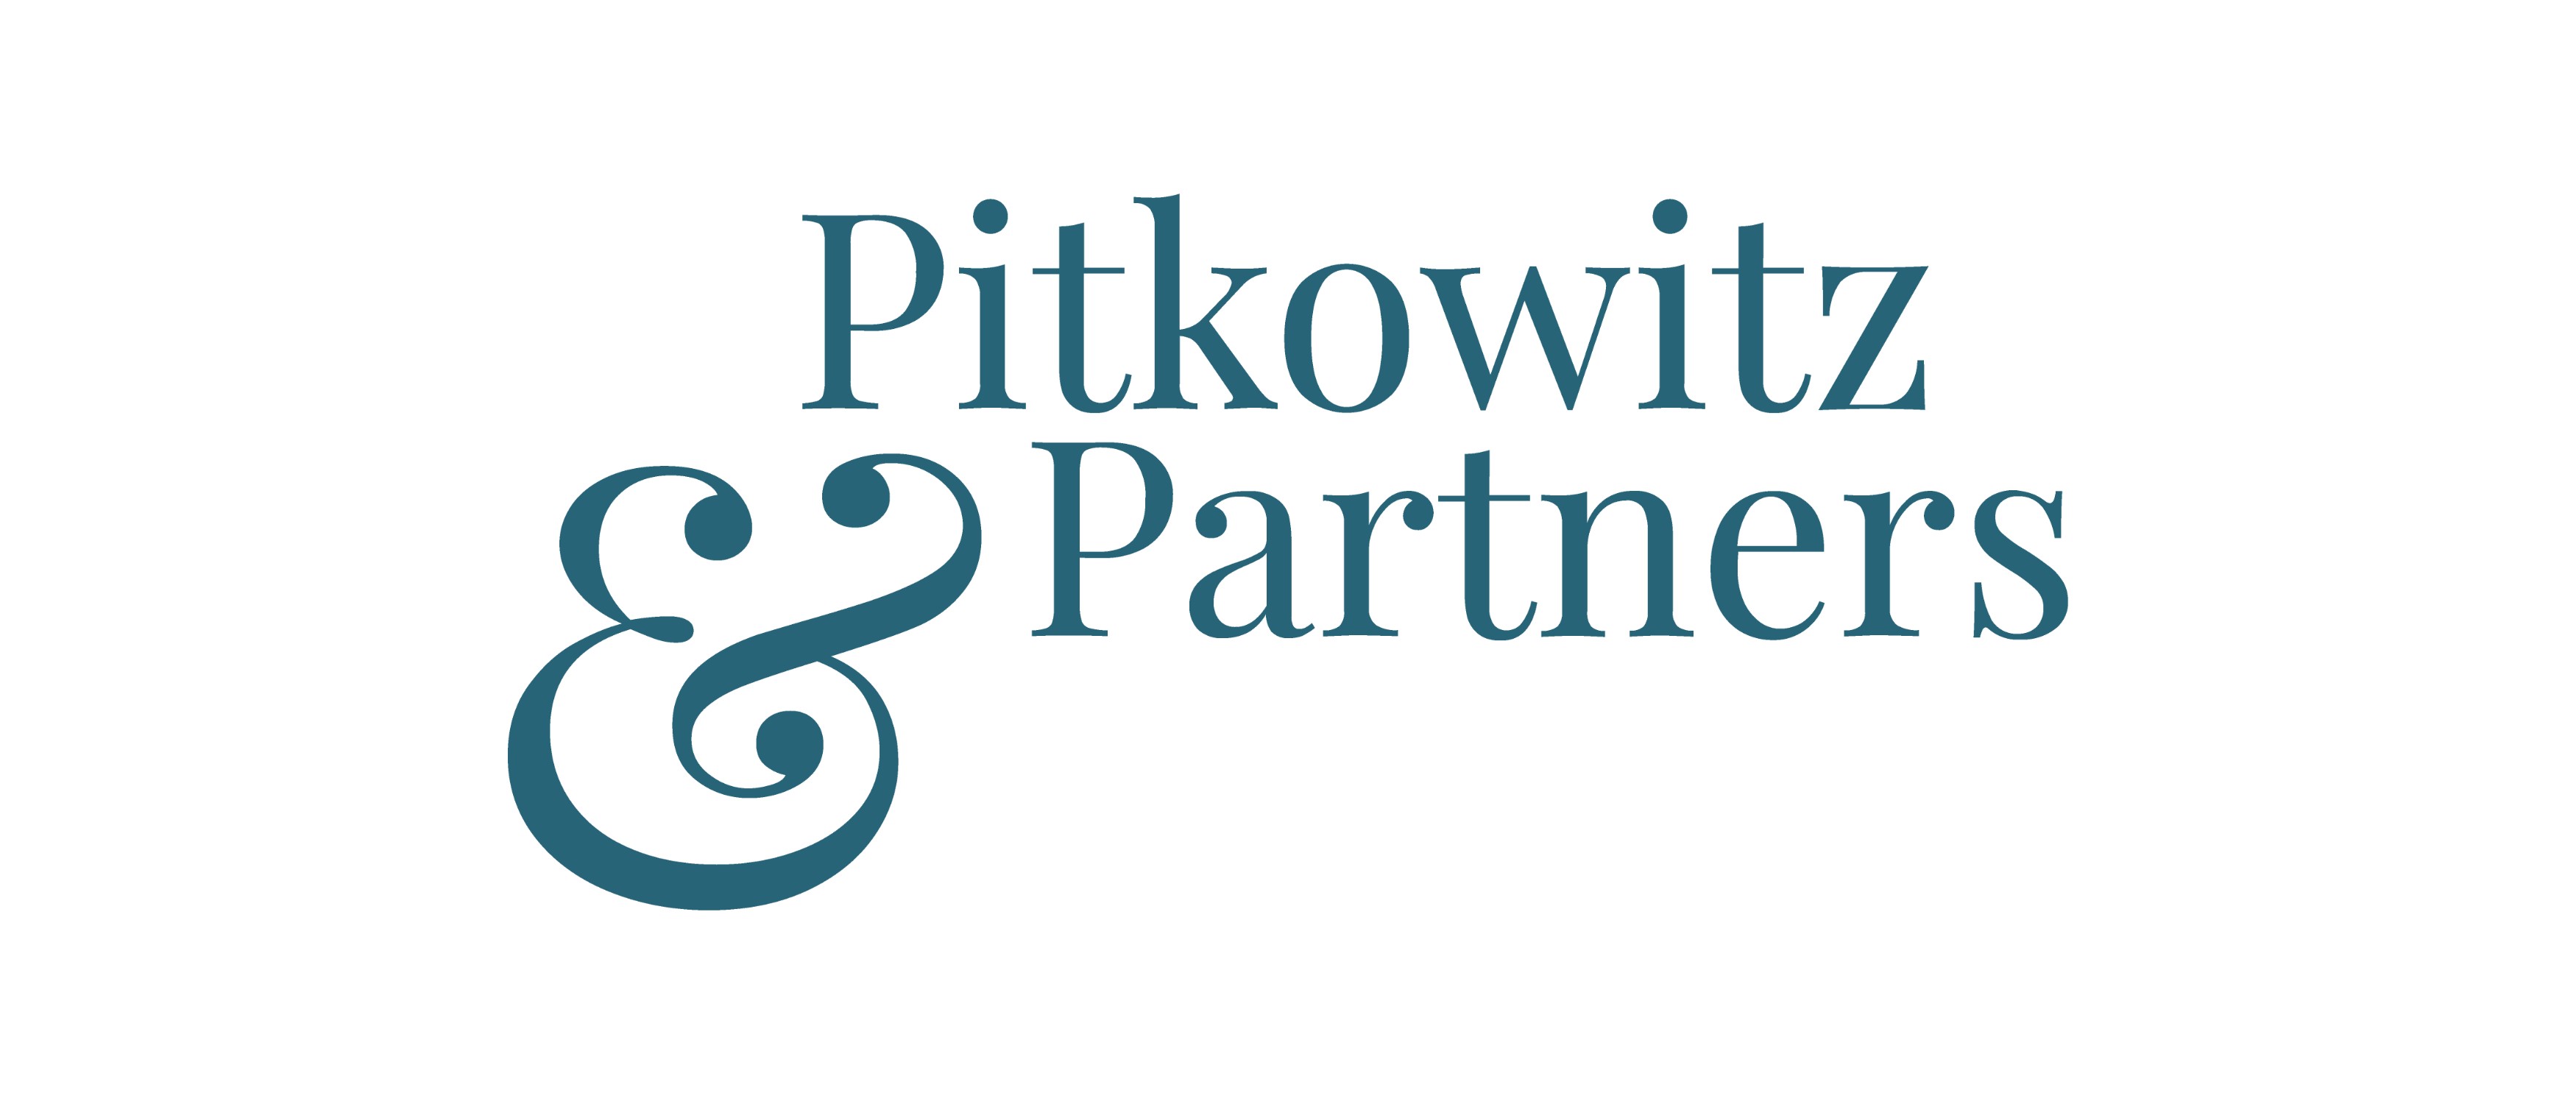 Pitkowitz & Partners